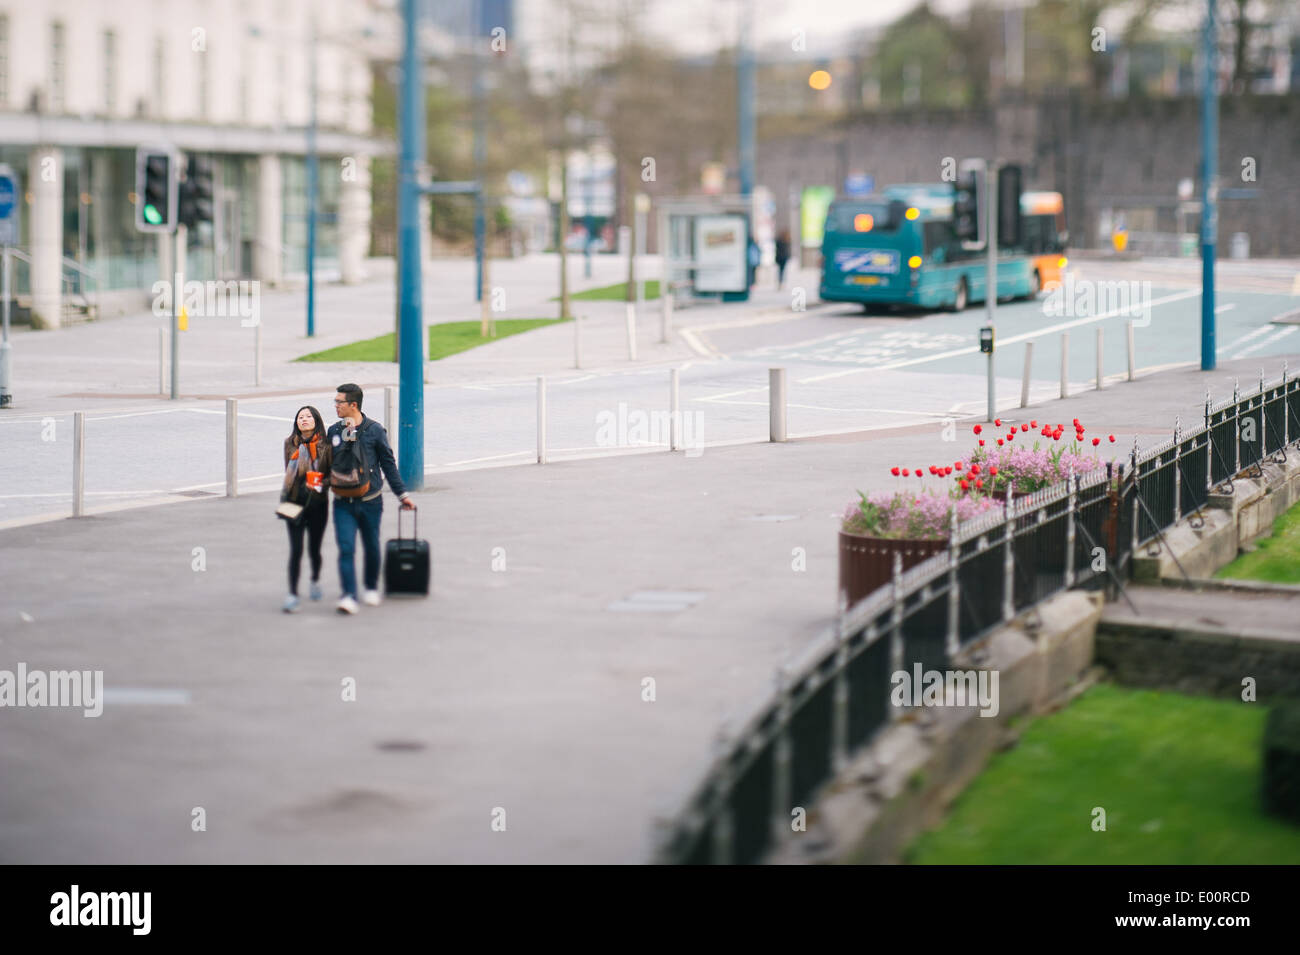 Un paio di Cardiff, Regno Unito. Un tilt-shift lente ha dato l'immagine di un 'miniaturised' effetto. Foto Stock